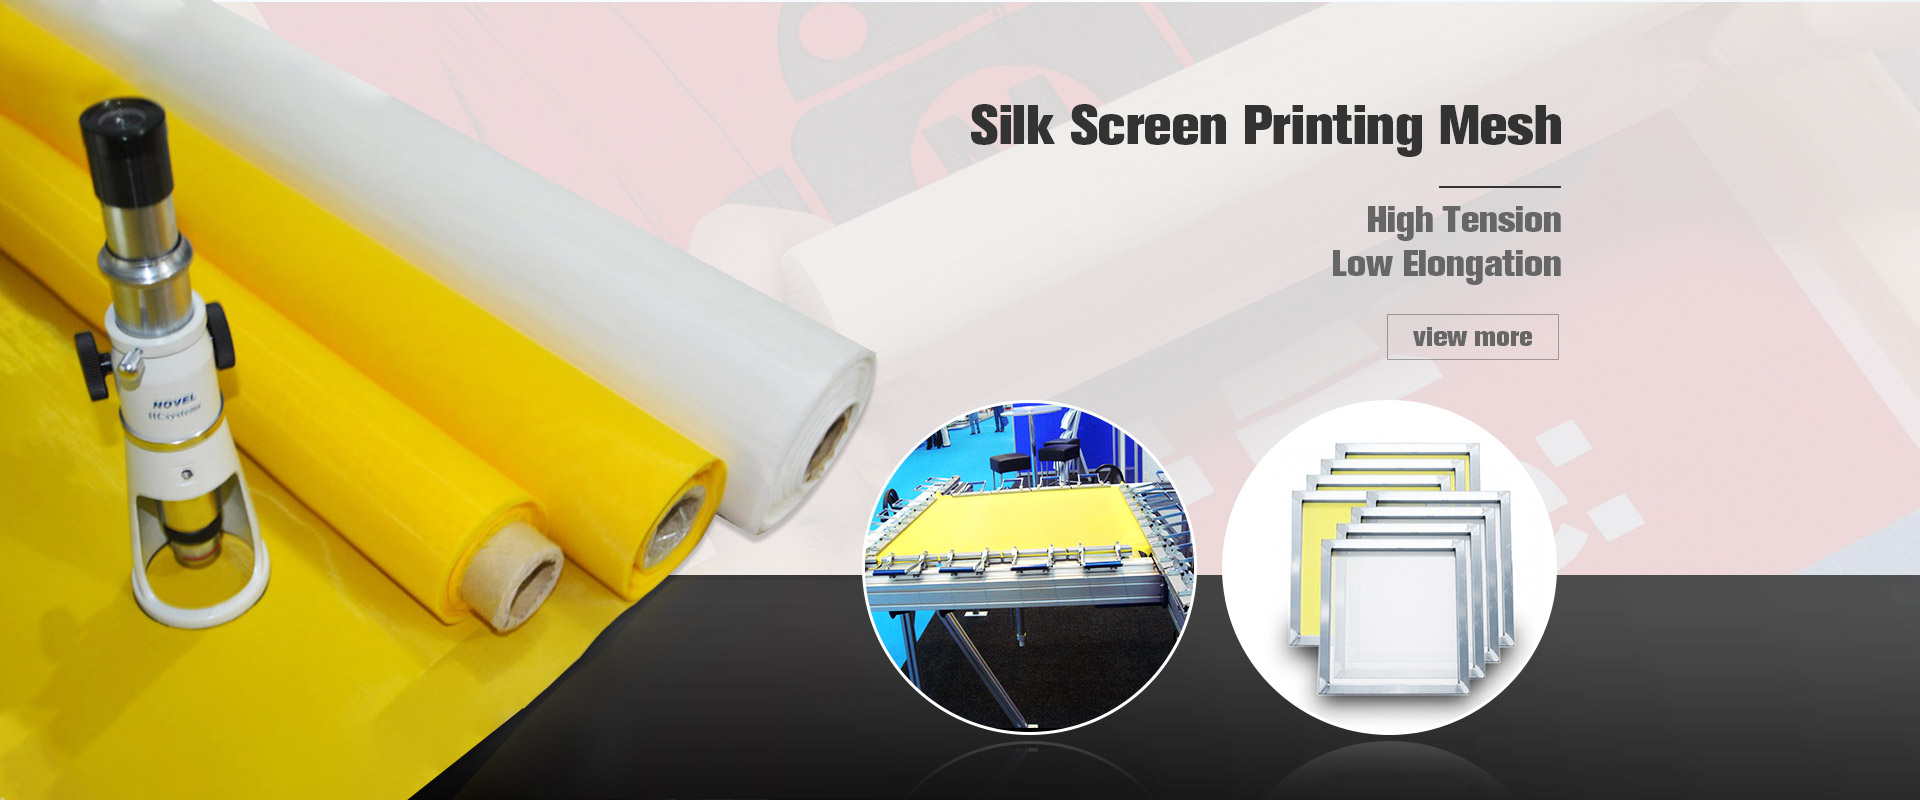 Silk Screen Printing Mesh